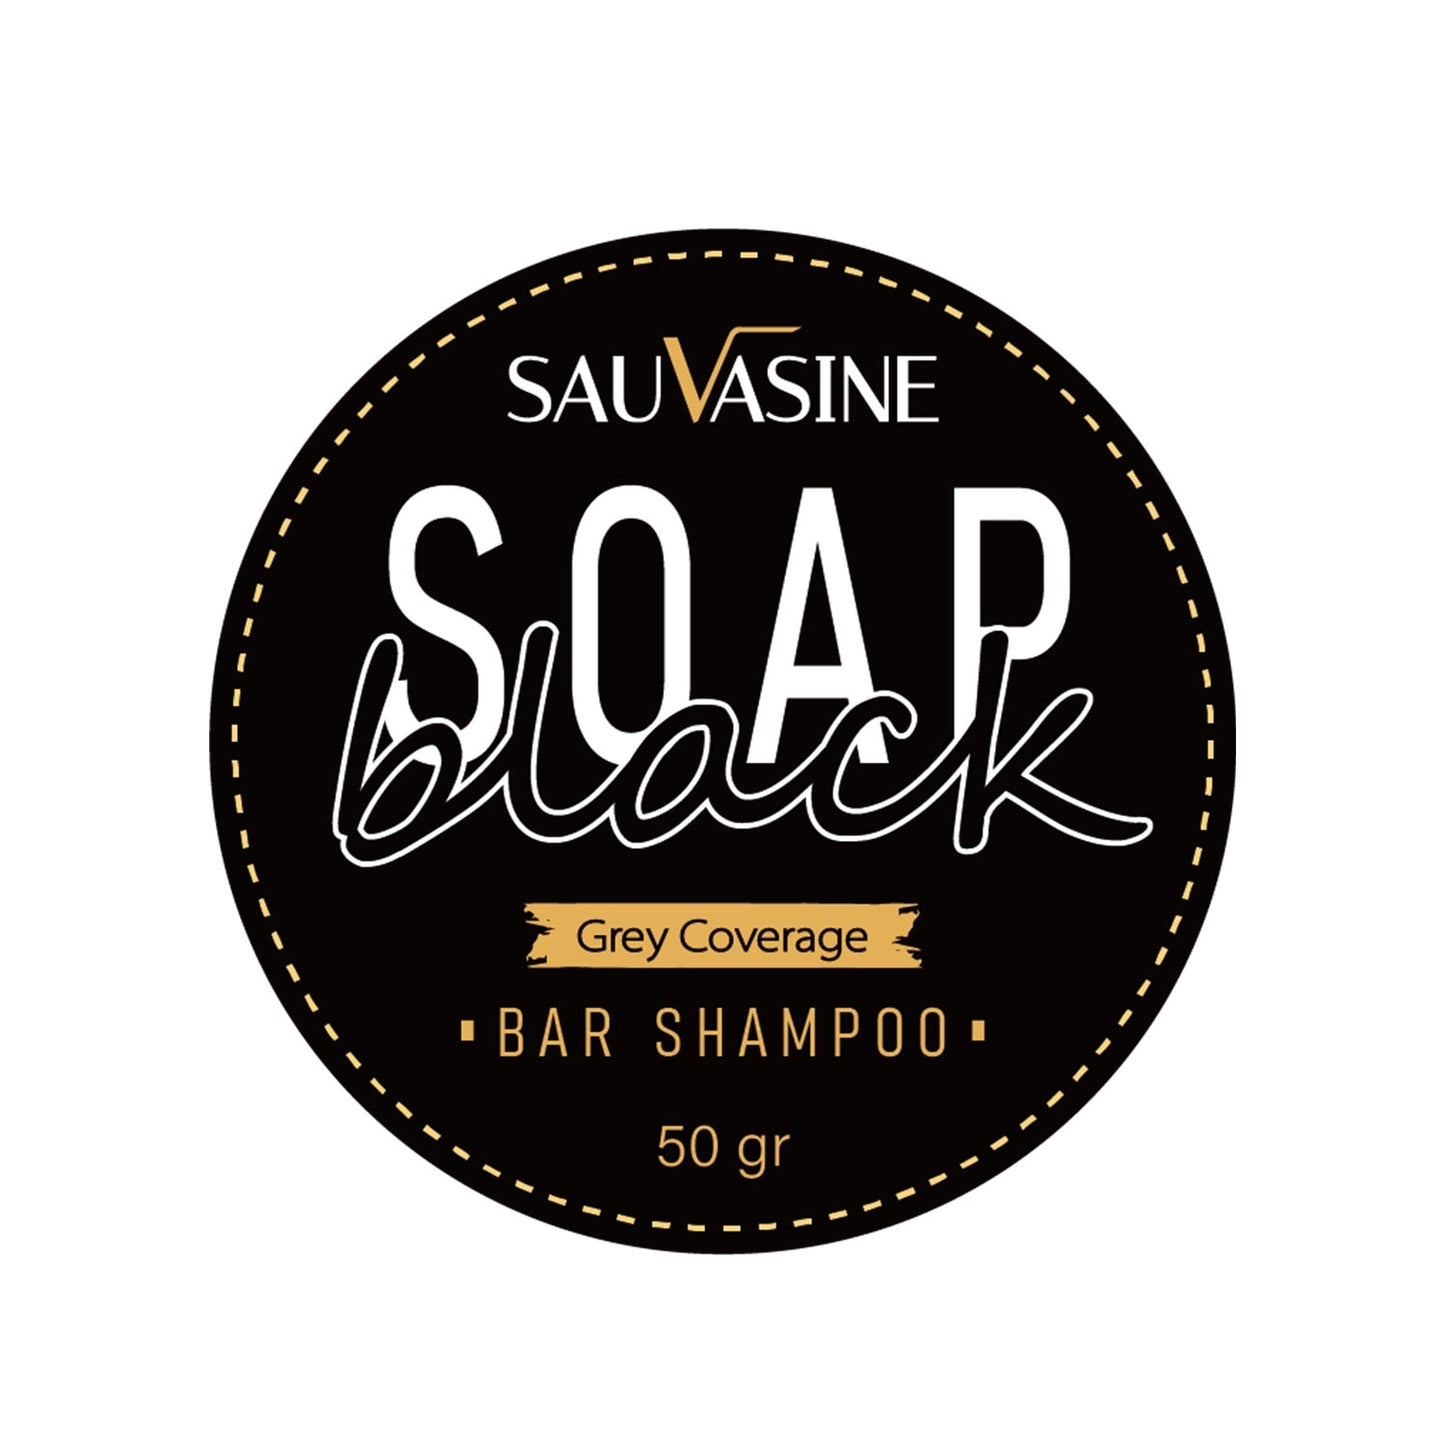 SAUVASINE SOAP BLACK BAR SHAMPOO